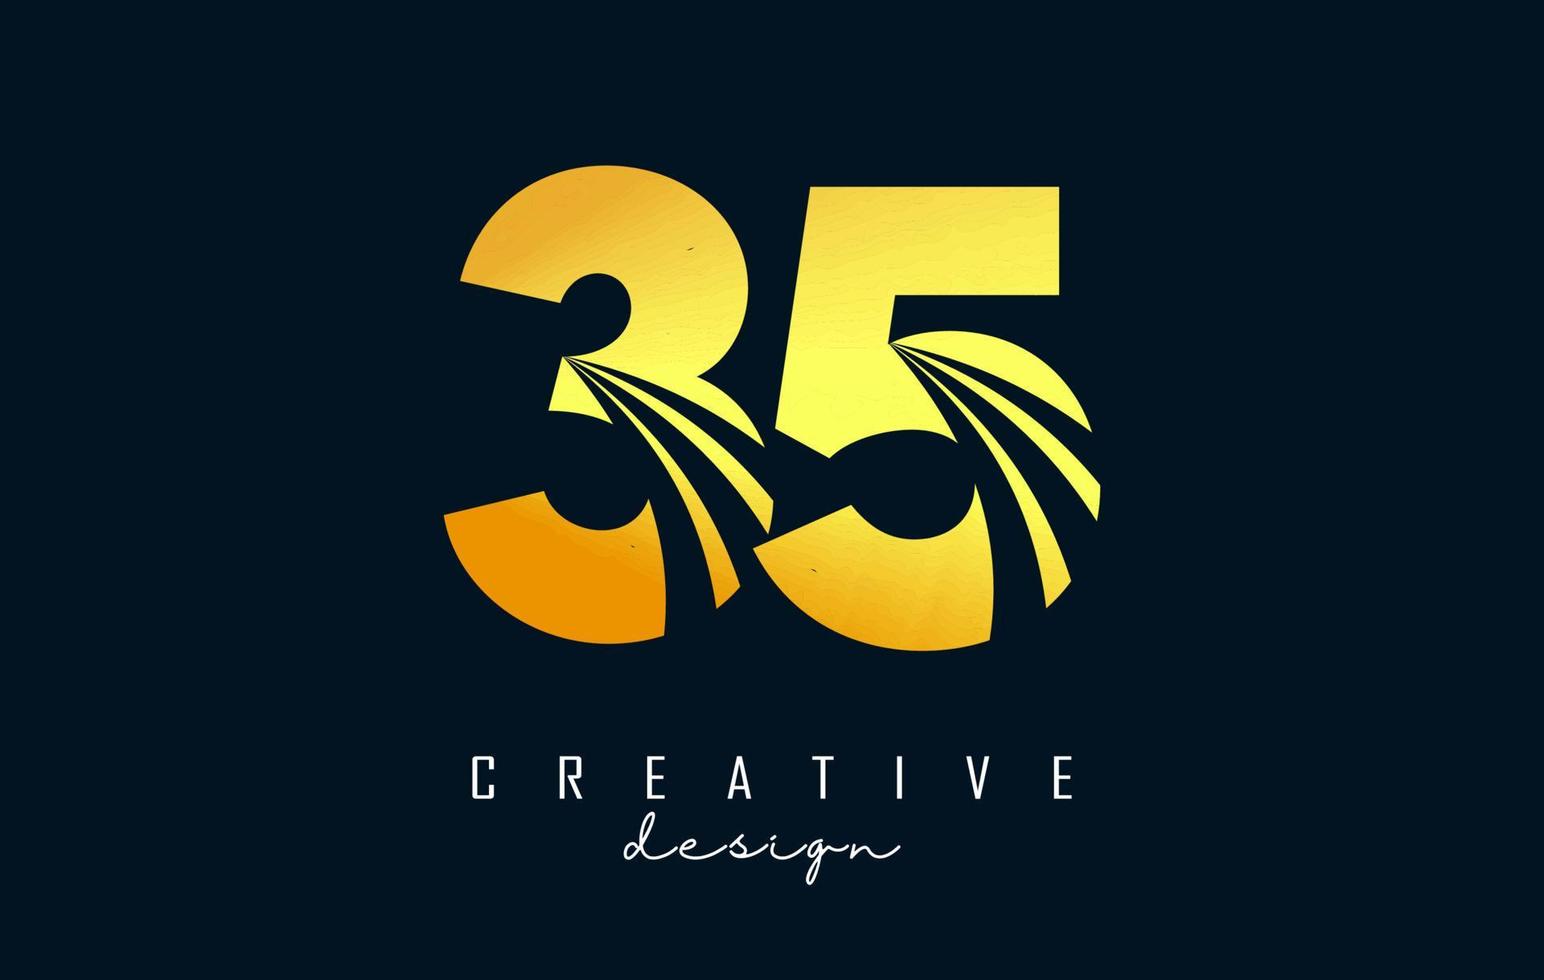 logotipo criativo dourado número 35 3 5 com linhas principais e design de conceito de estrada. número com desenho geométrico. vetor